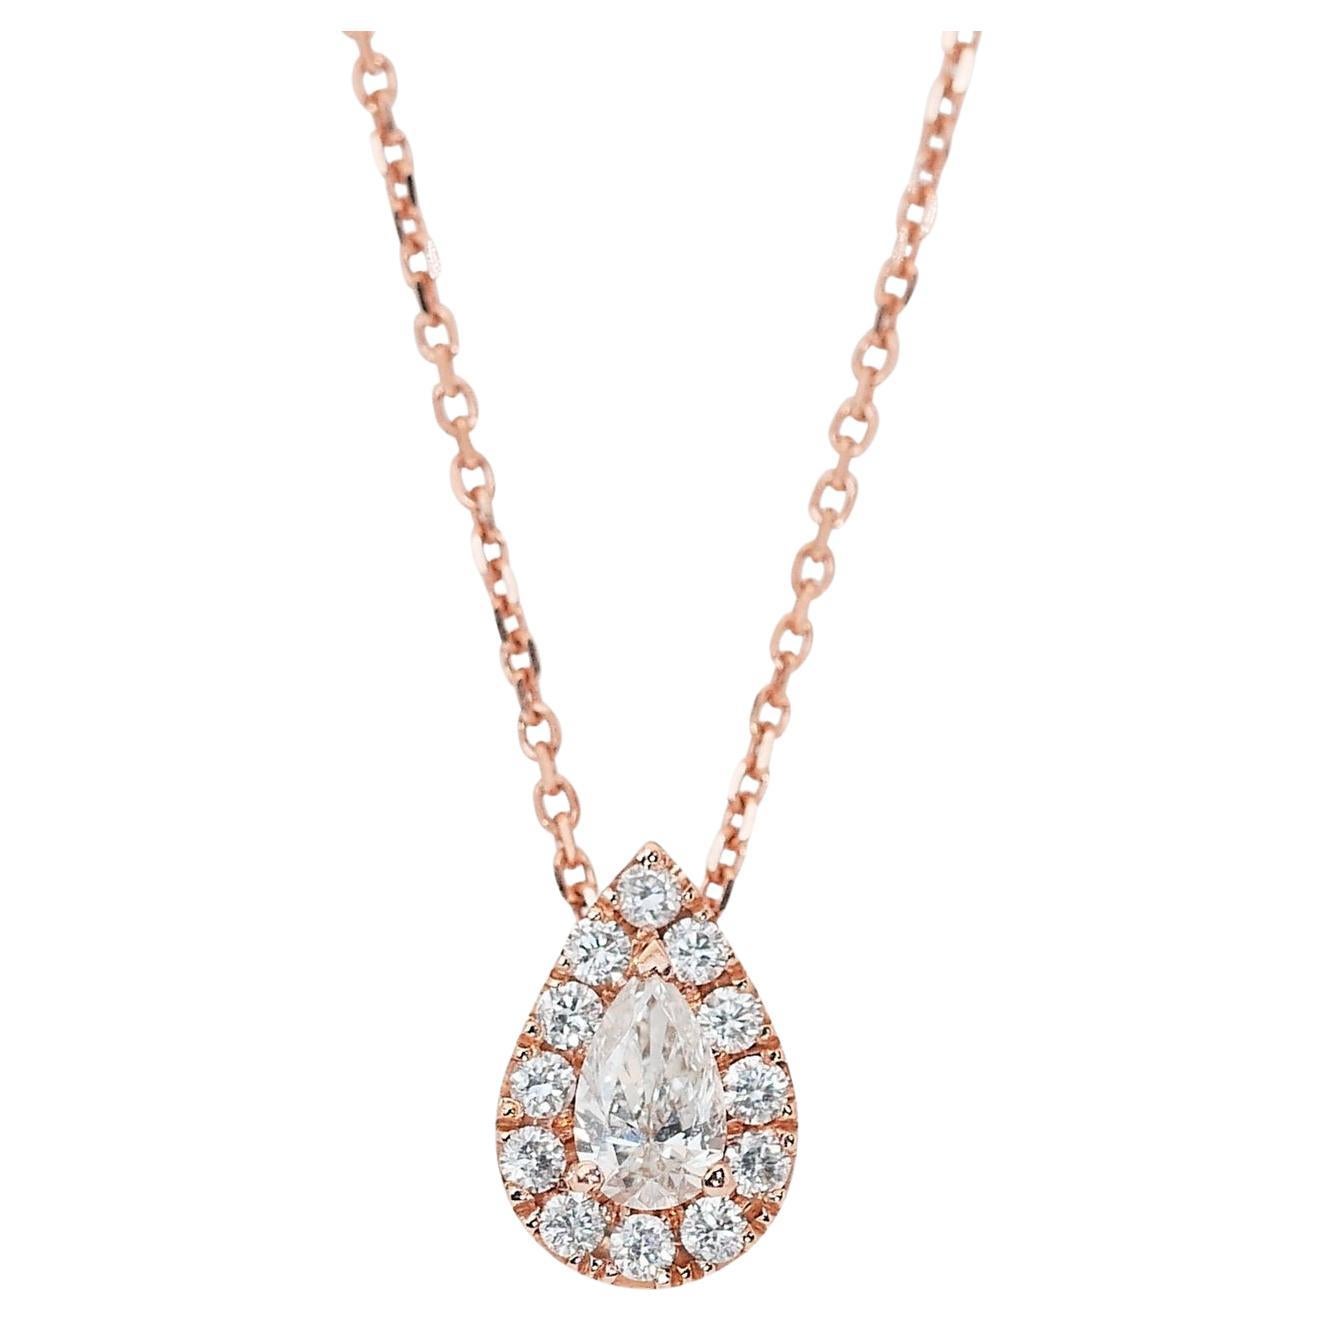 Magnifique collier halo de diamants de 0,63ct en or rose 18k - certifié GIA